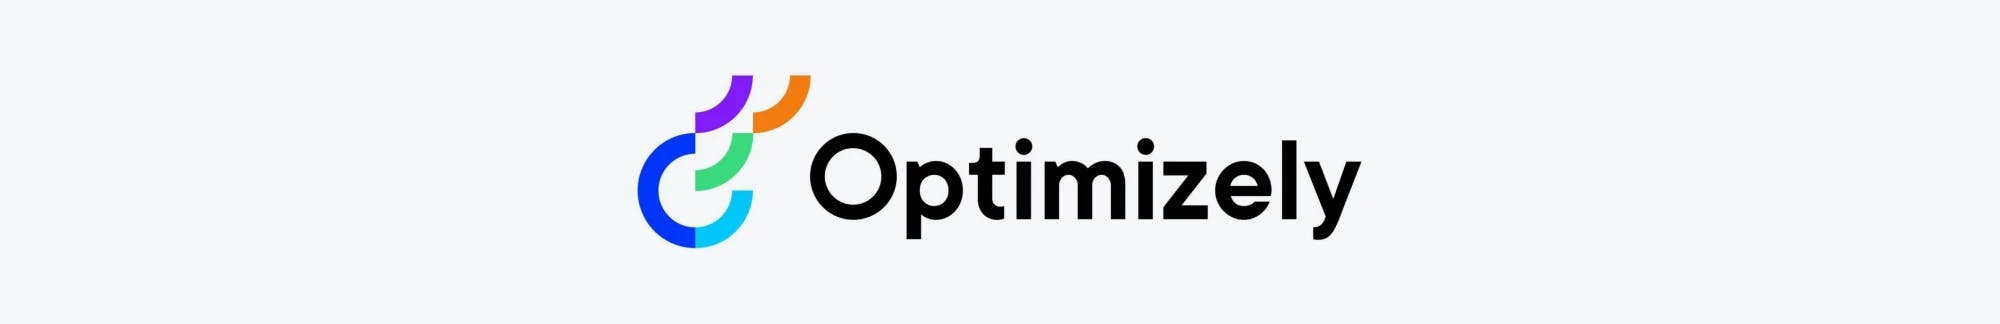 Optimizely logo